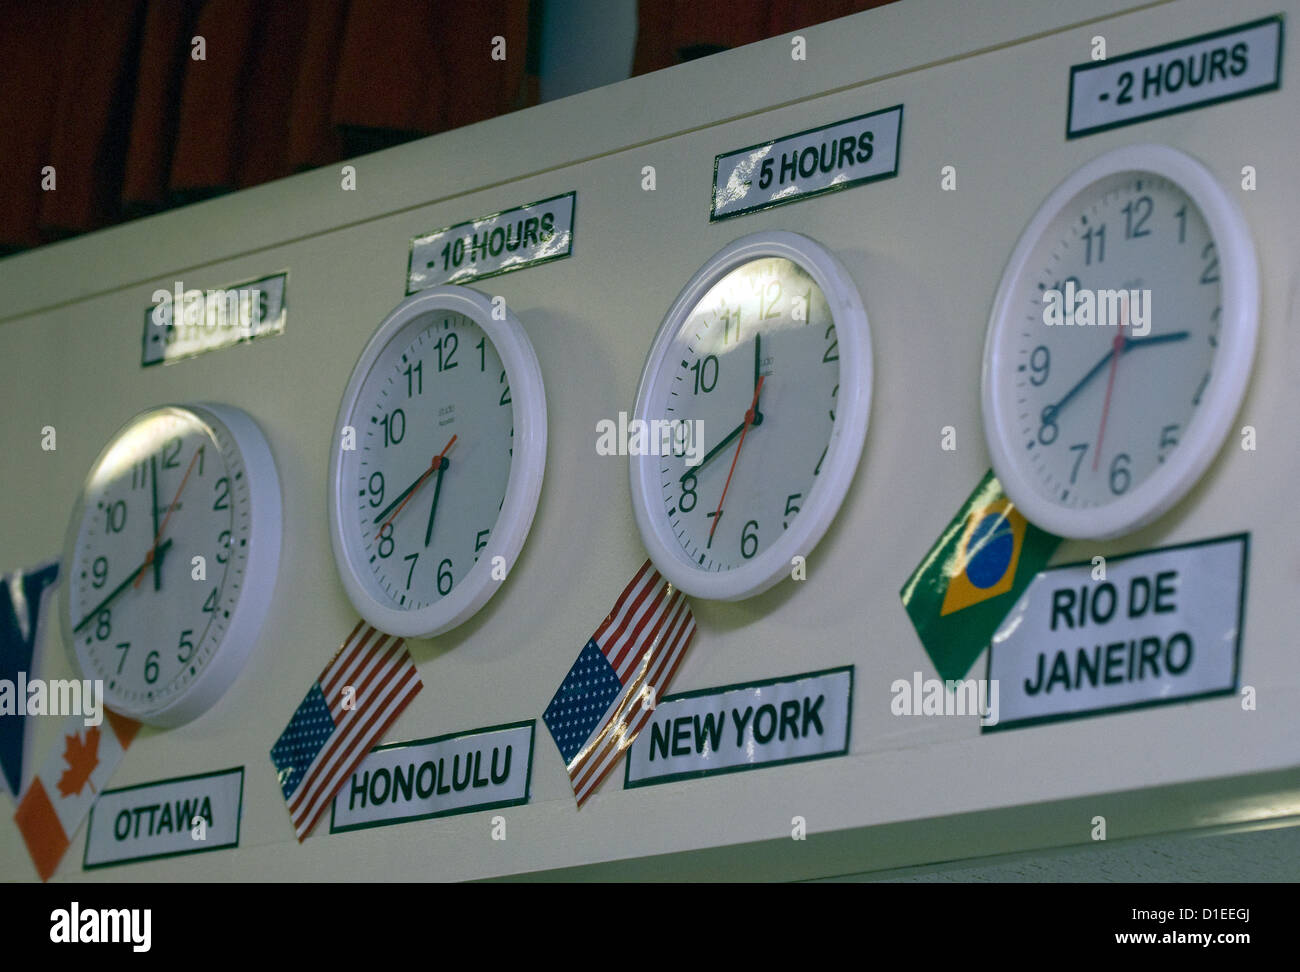 Dans une école d'horloges affichant des différences de fuseaux horaires, hindhead, Hampshire, Royaume-Uni. Banque D'Images